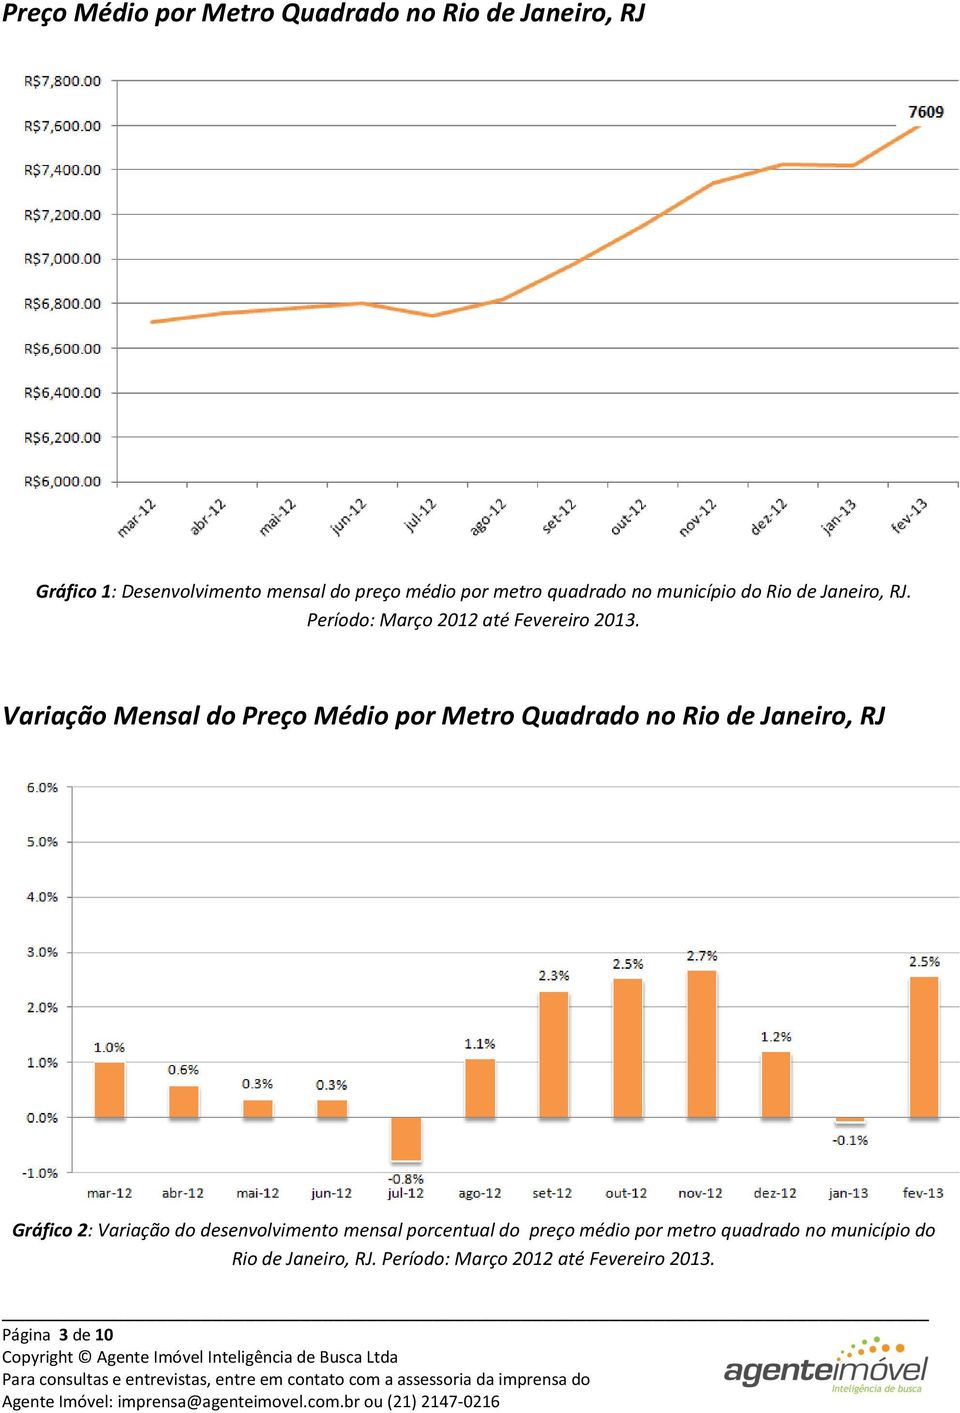 Variação Mensal do Preço Médio por Metro Quadrado no Rio de Janeiro, RJ Gráfico 2: Variação do desenvolvimento